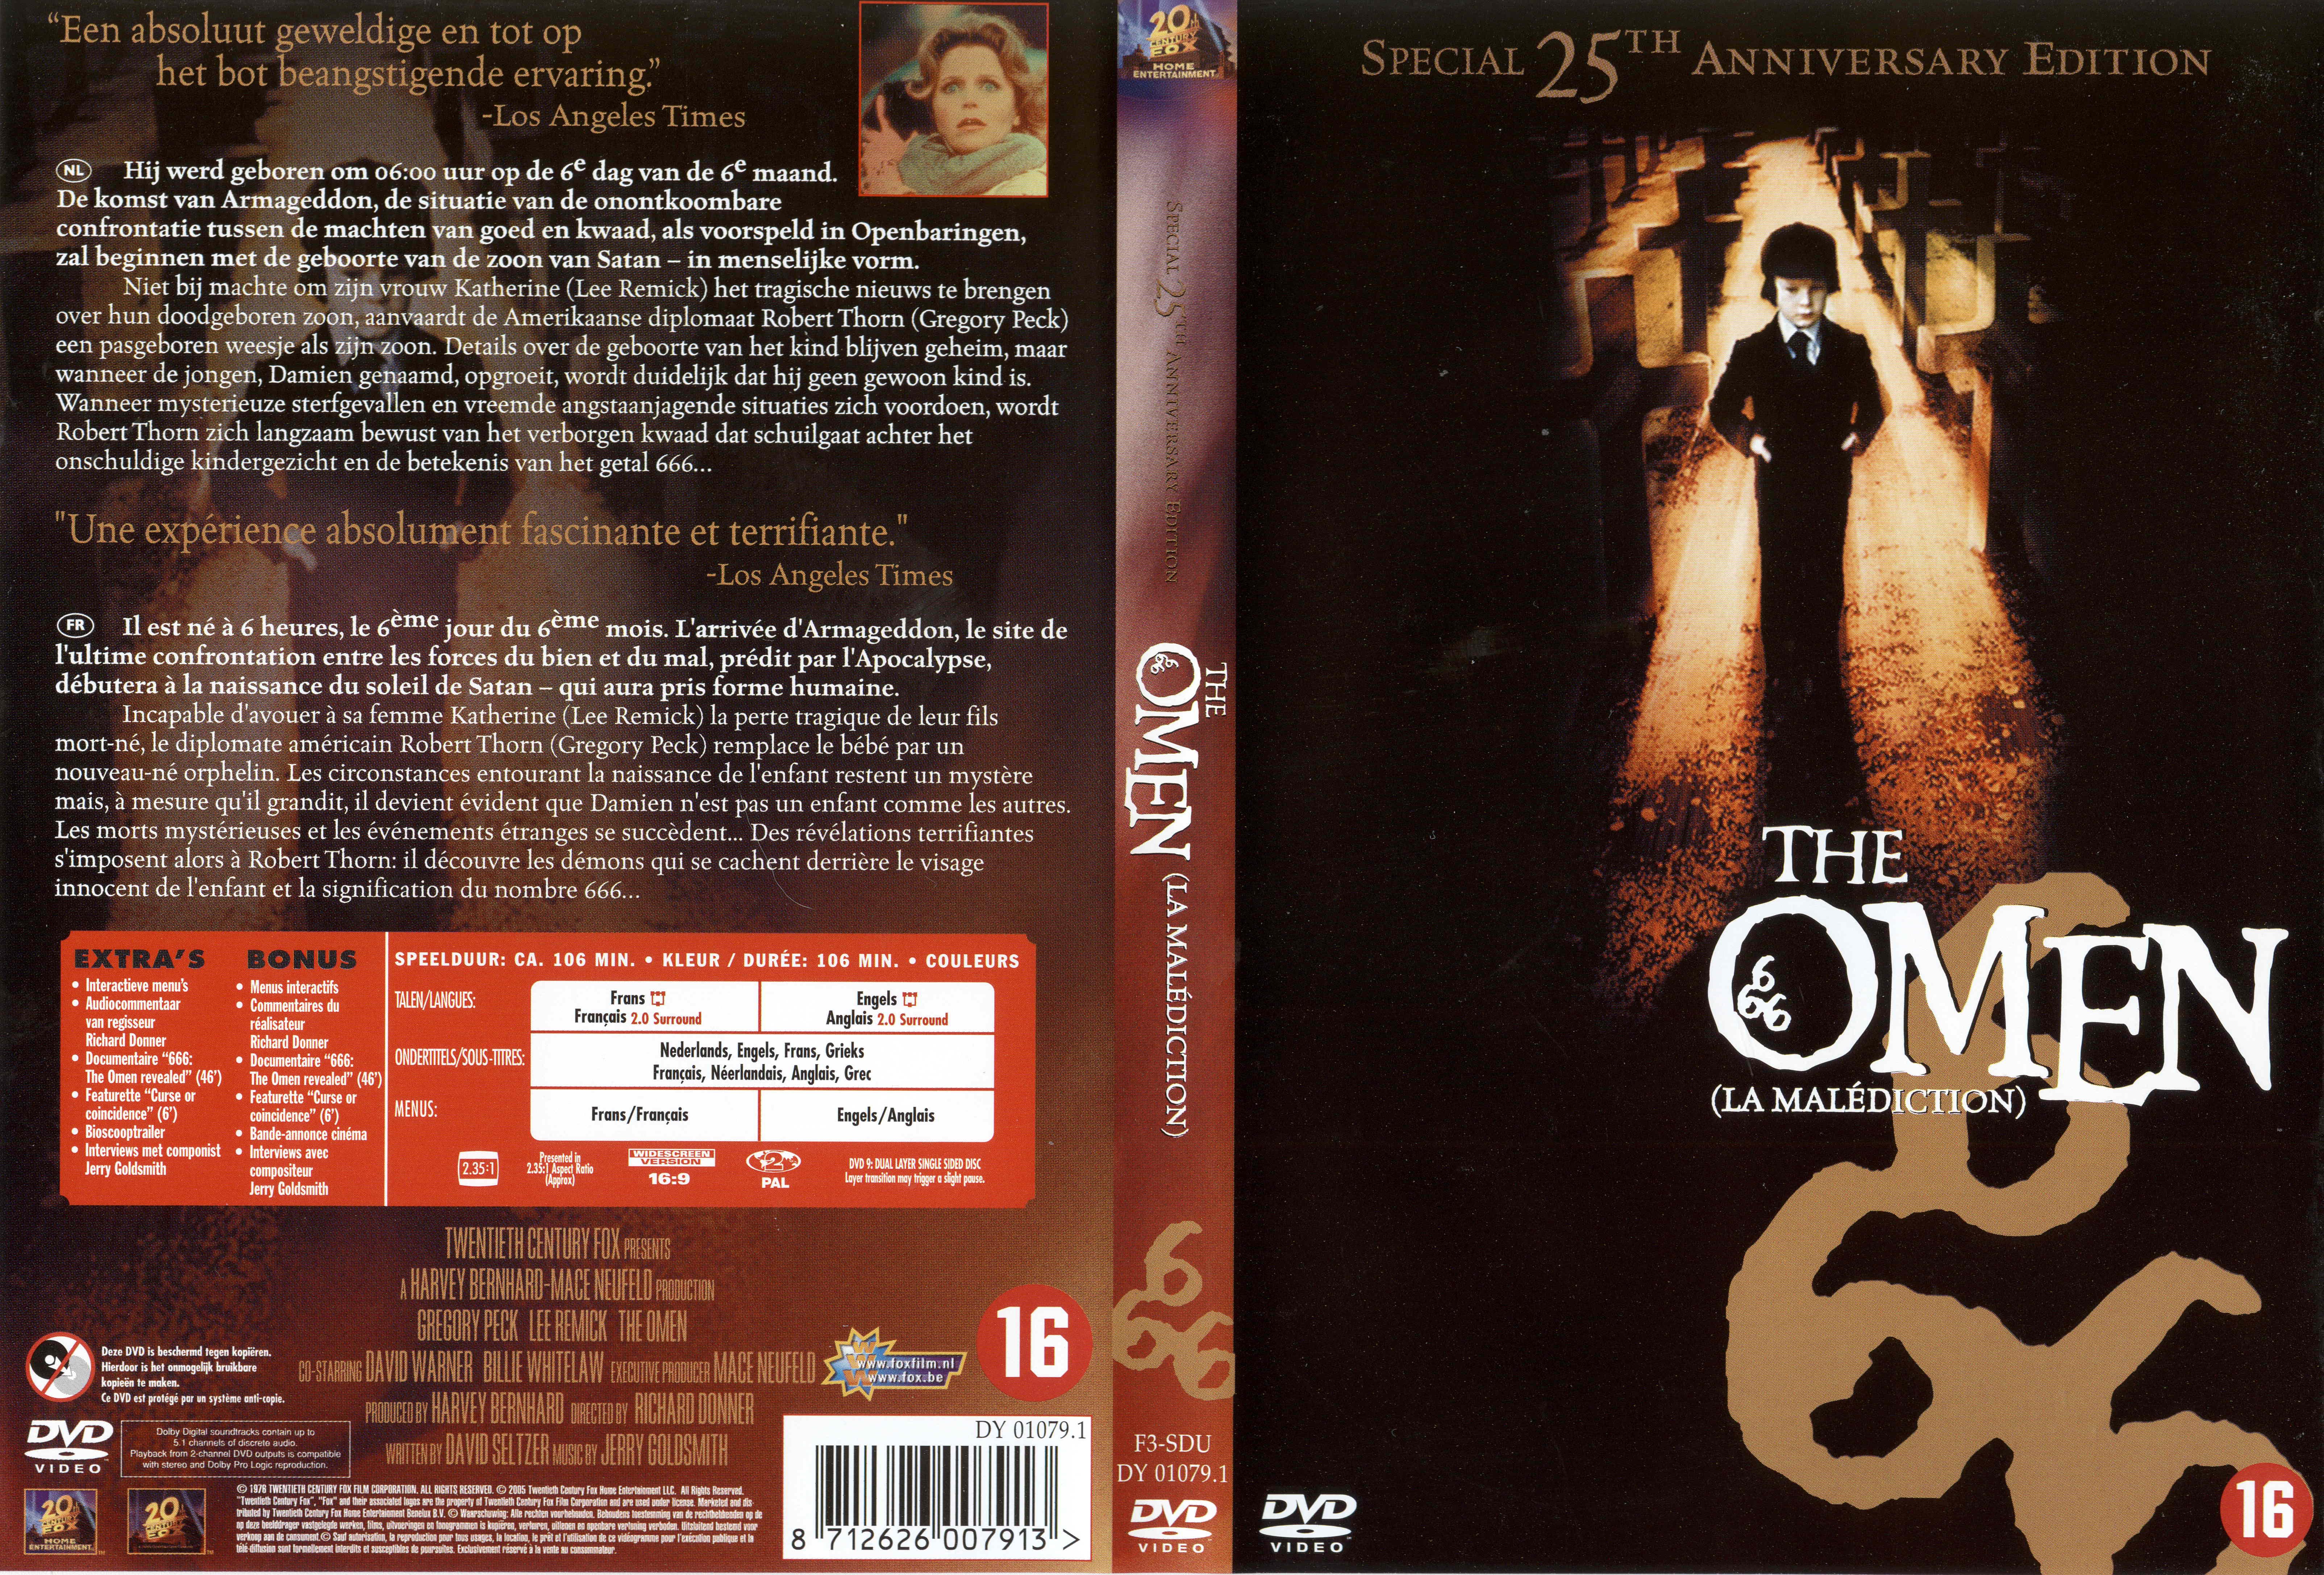 Jaquette DVD The omen - La maldiction